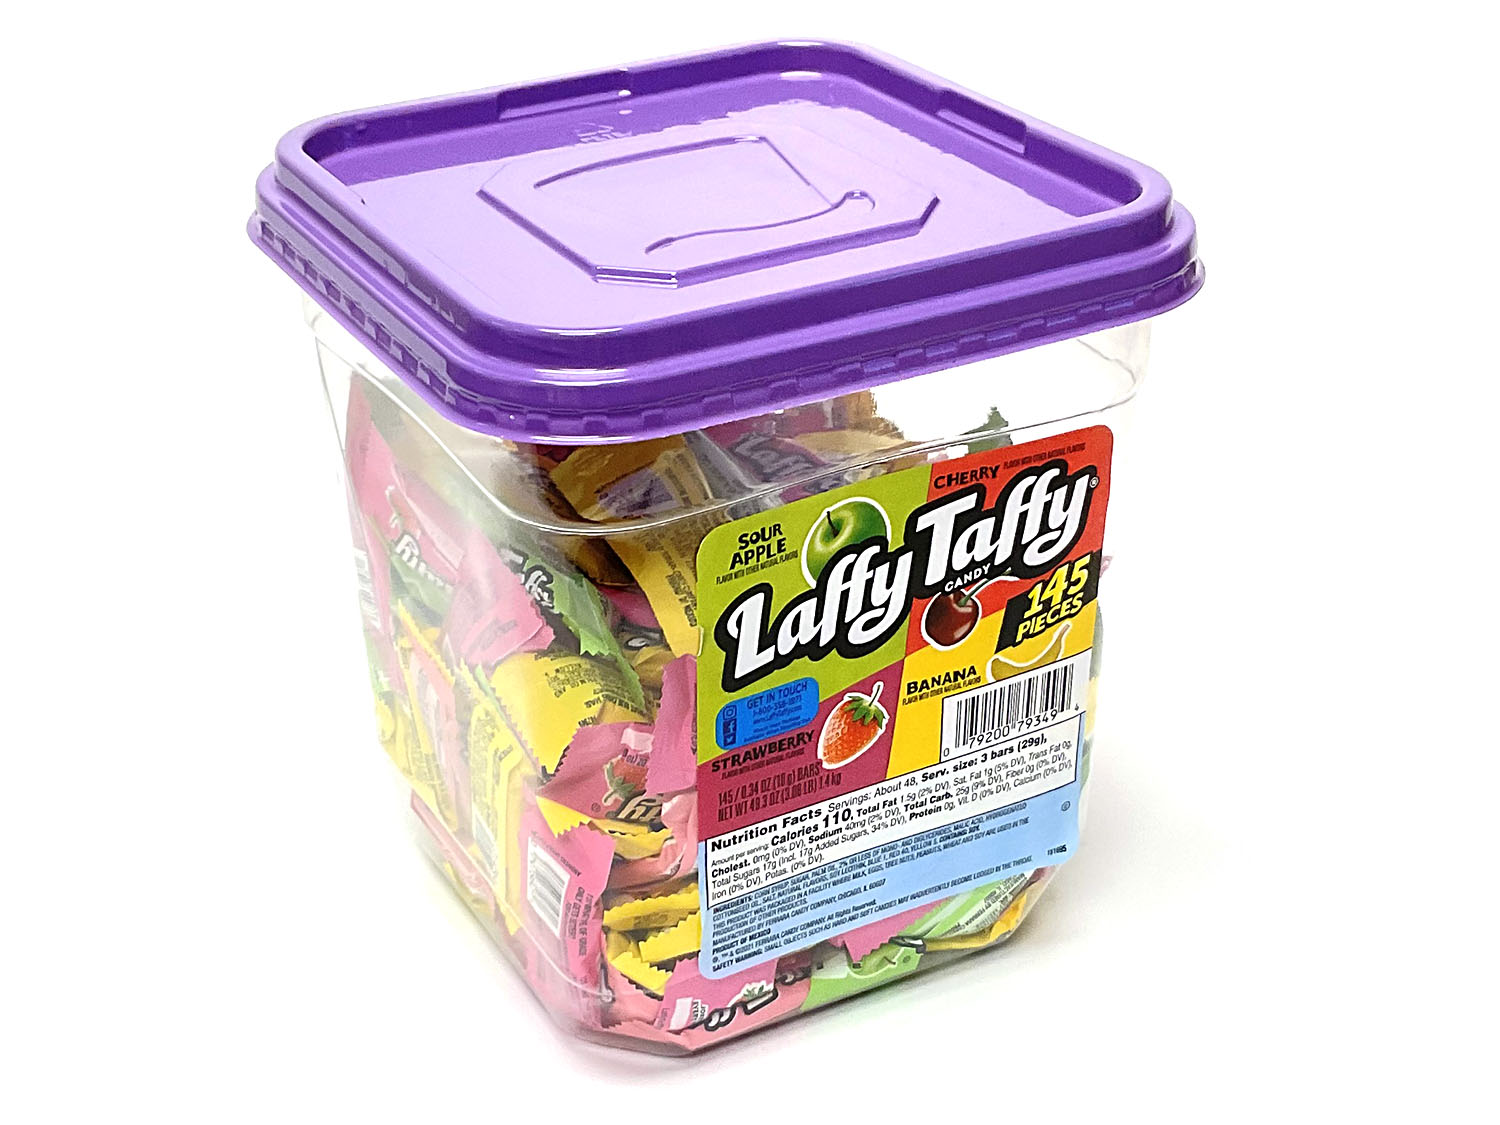 Laffy Taffy Candy - Assorted: 145-Piece Tub